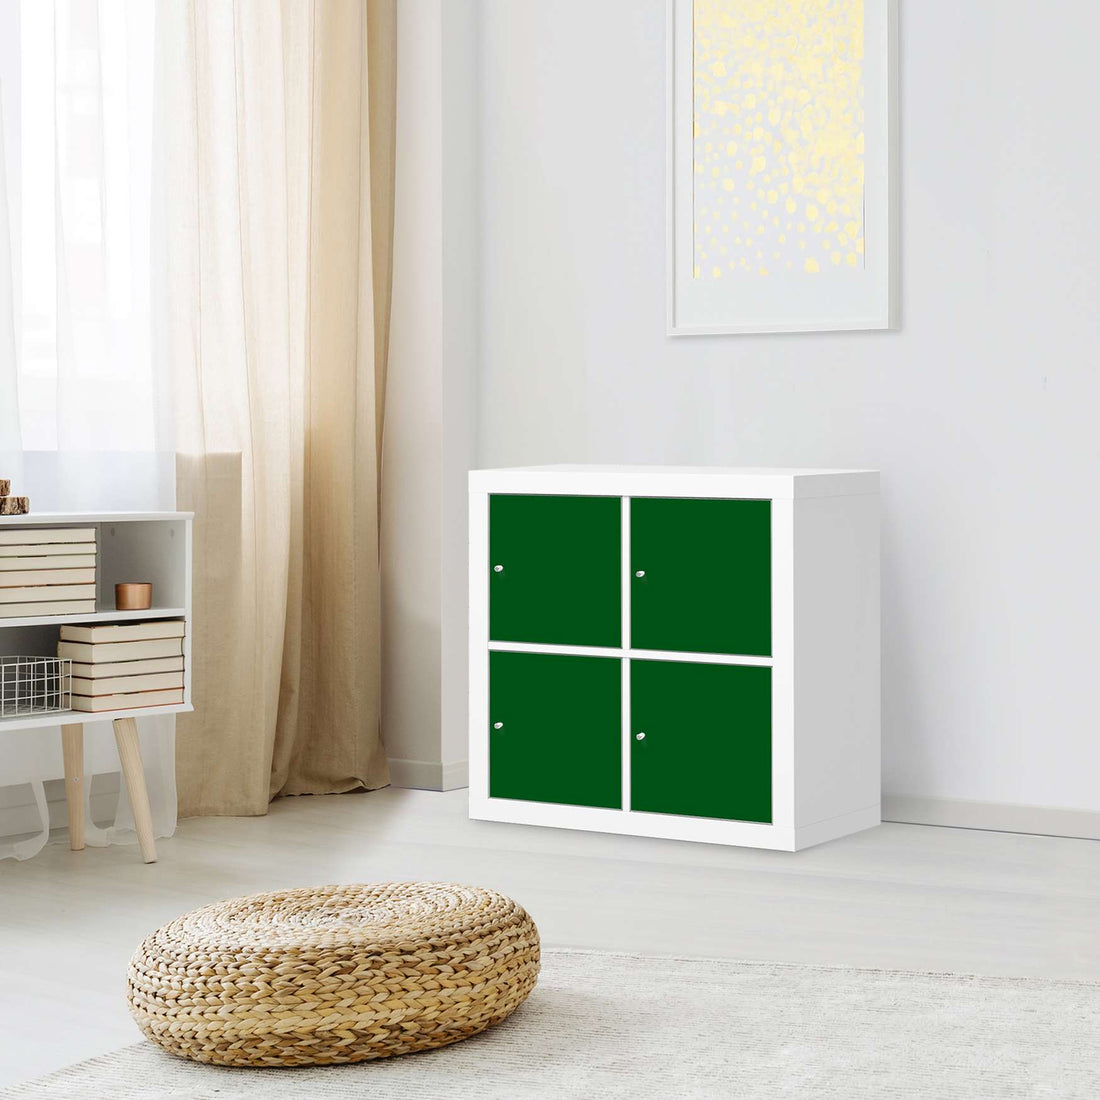 Möbelfolie Grün Dark - IKEA Expedit Regal 4 Türen - Wohnzimmer